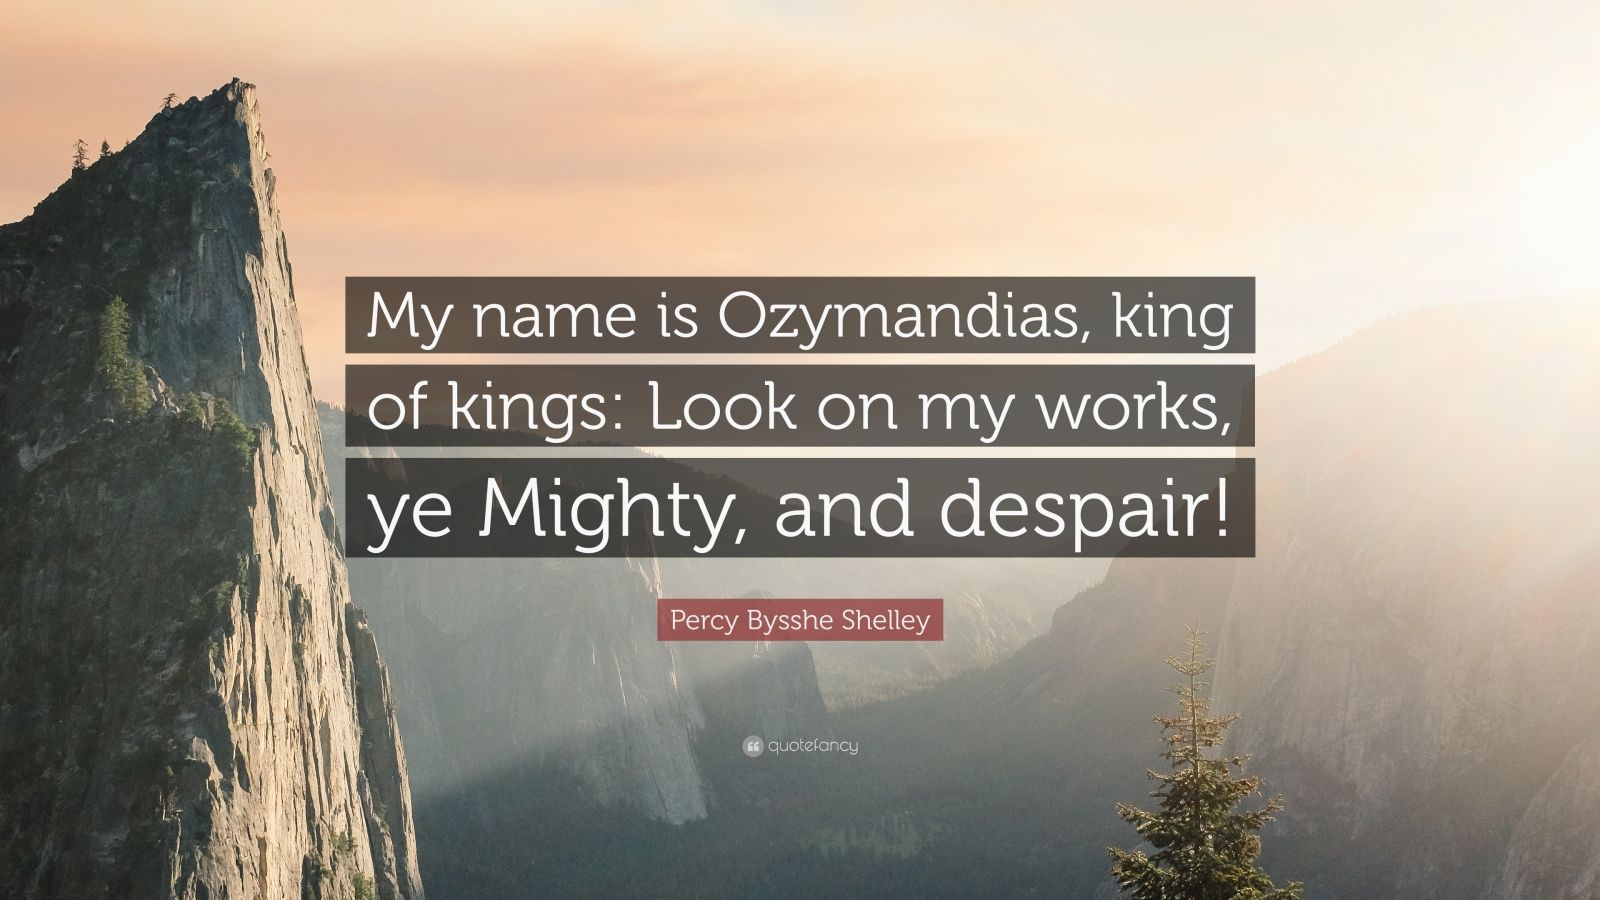 ozymandias quote